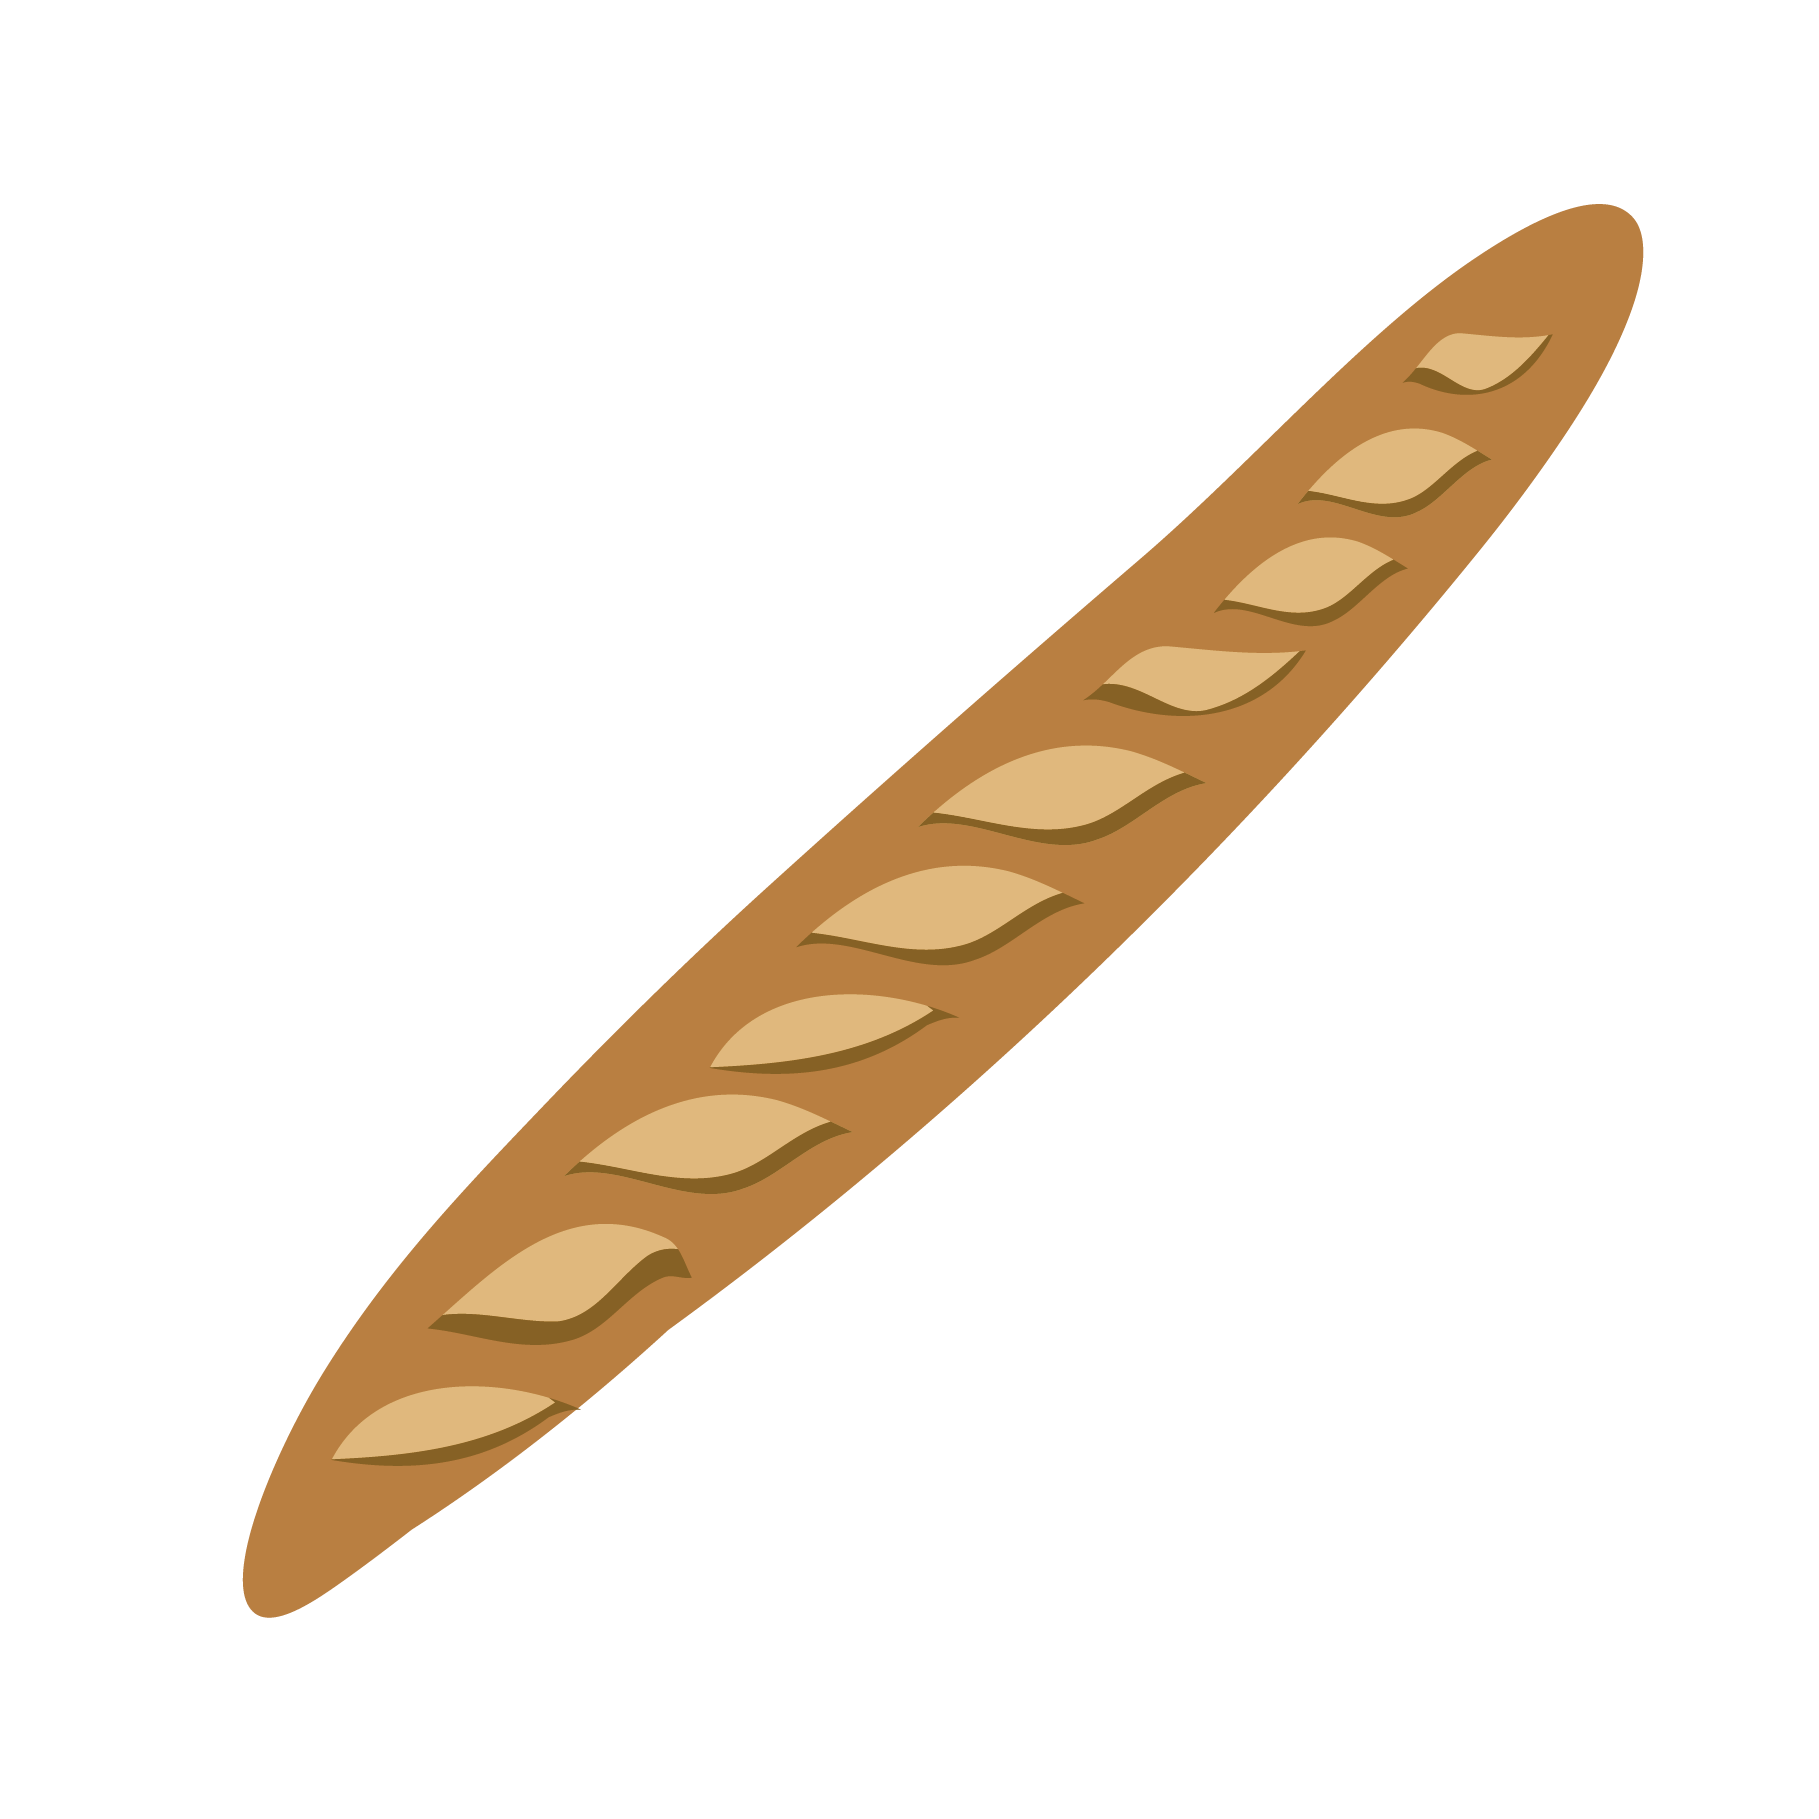 長 いフランスパン バケットのイラスト 商用フリー 無料 のイラスト素材なら イラストマンション